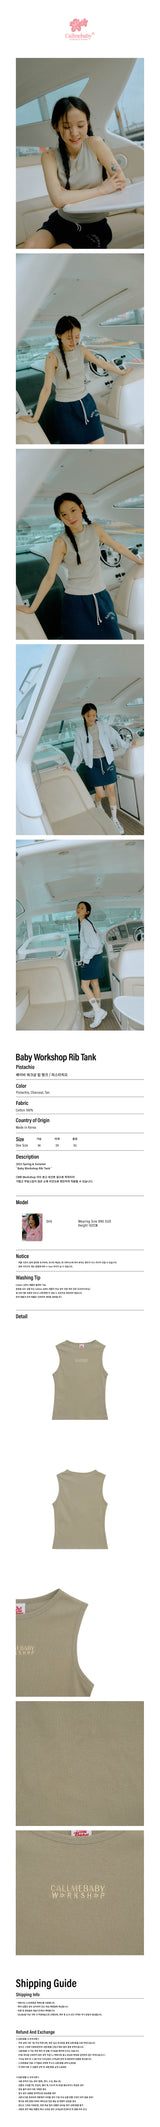 ベイビーワークショップリブタンク / Baby Workshop Rib Tank _ Pistachio